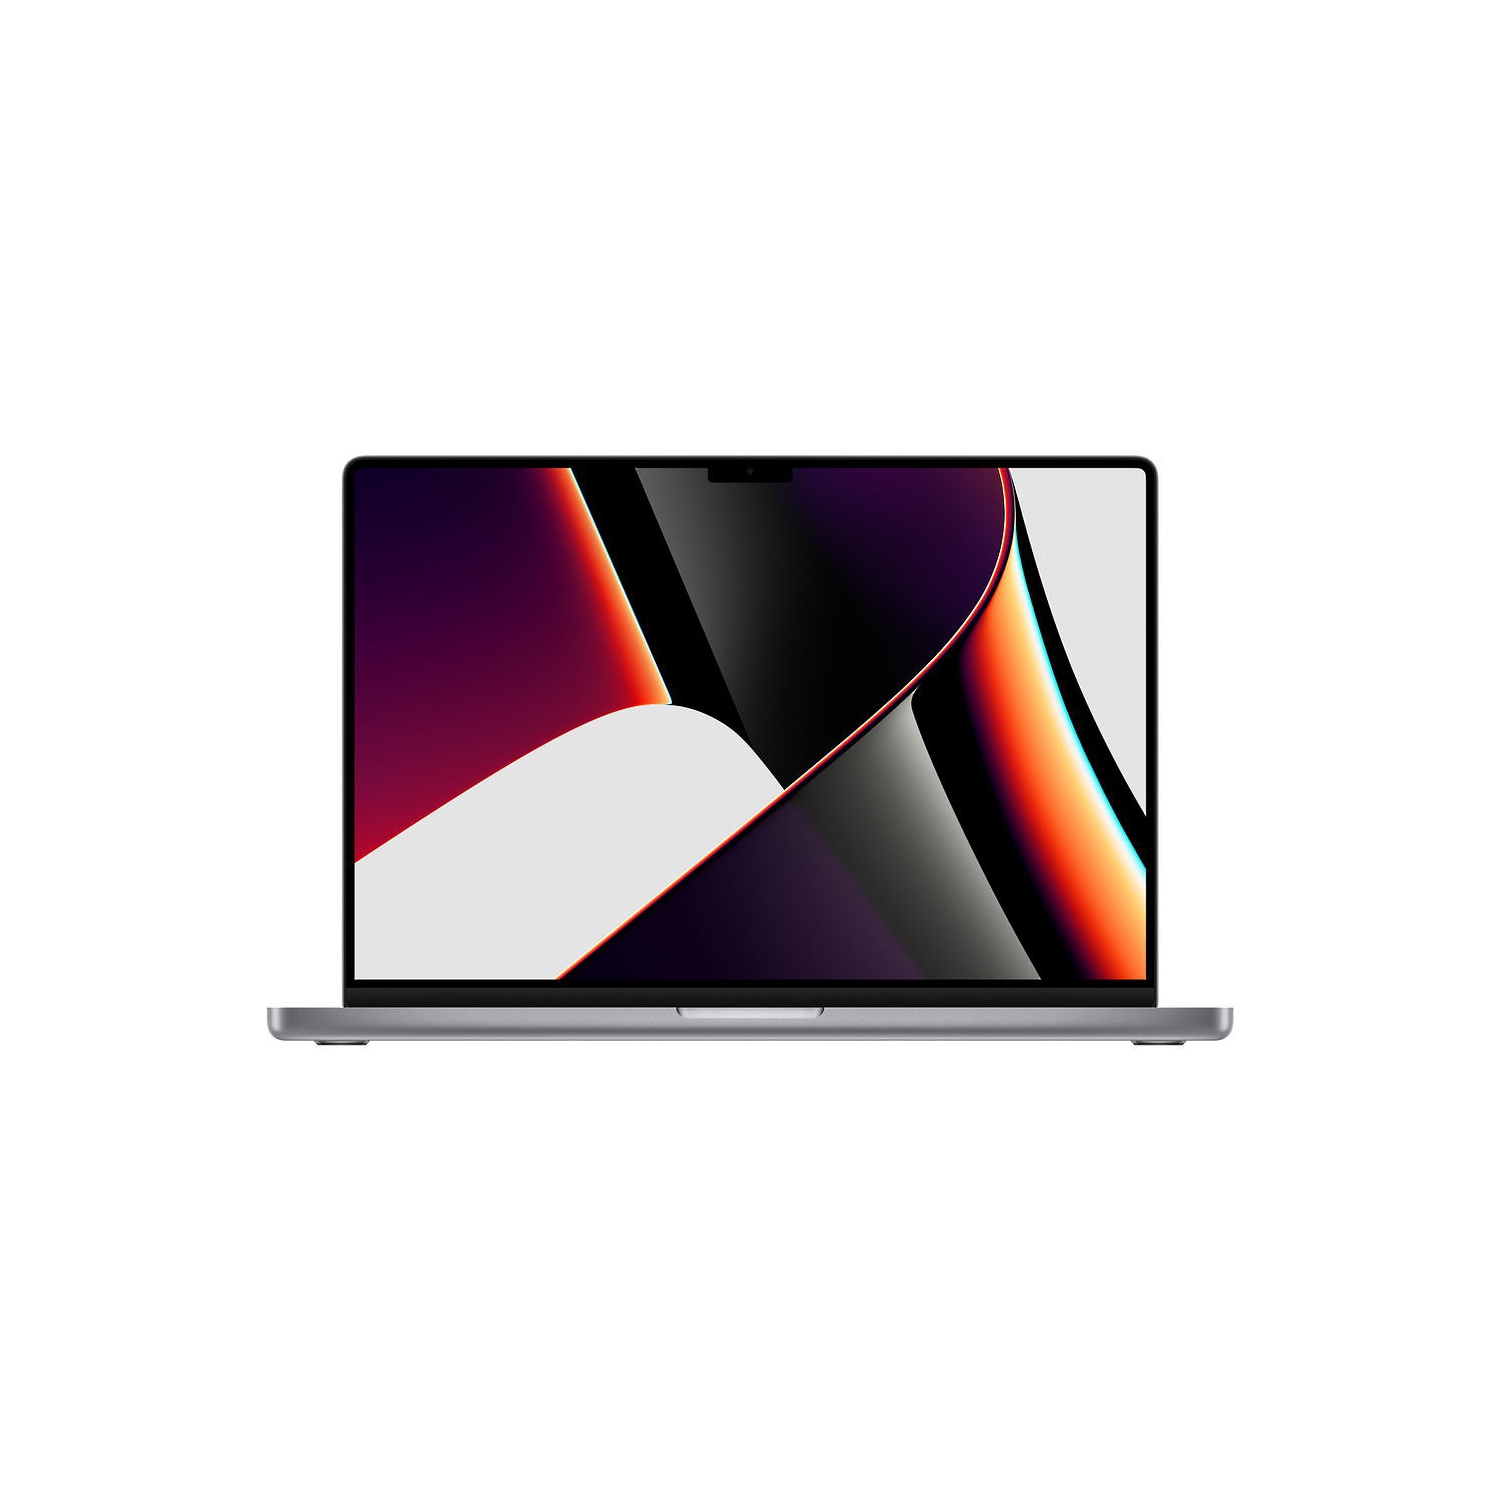 Open Box - Macbook Pro 16-inch (Retina XDR, 16-GPU, Space Gray, 1yr Warranty) 3.2Ghz 10-Core M1 Pro (2021) MK183LL/A 512GB Flash 16GB RAM 3456x2234 Mac OS